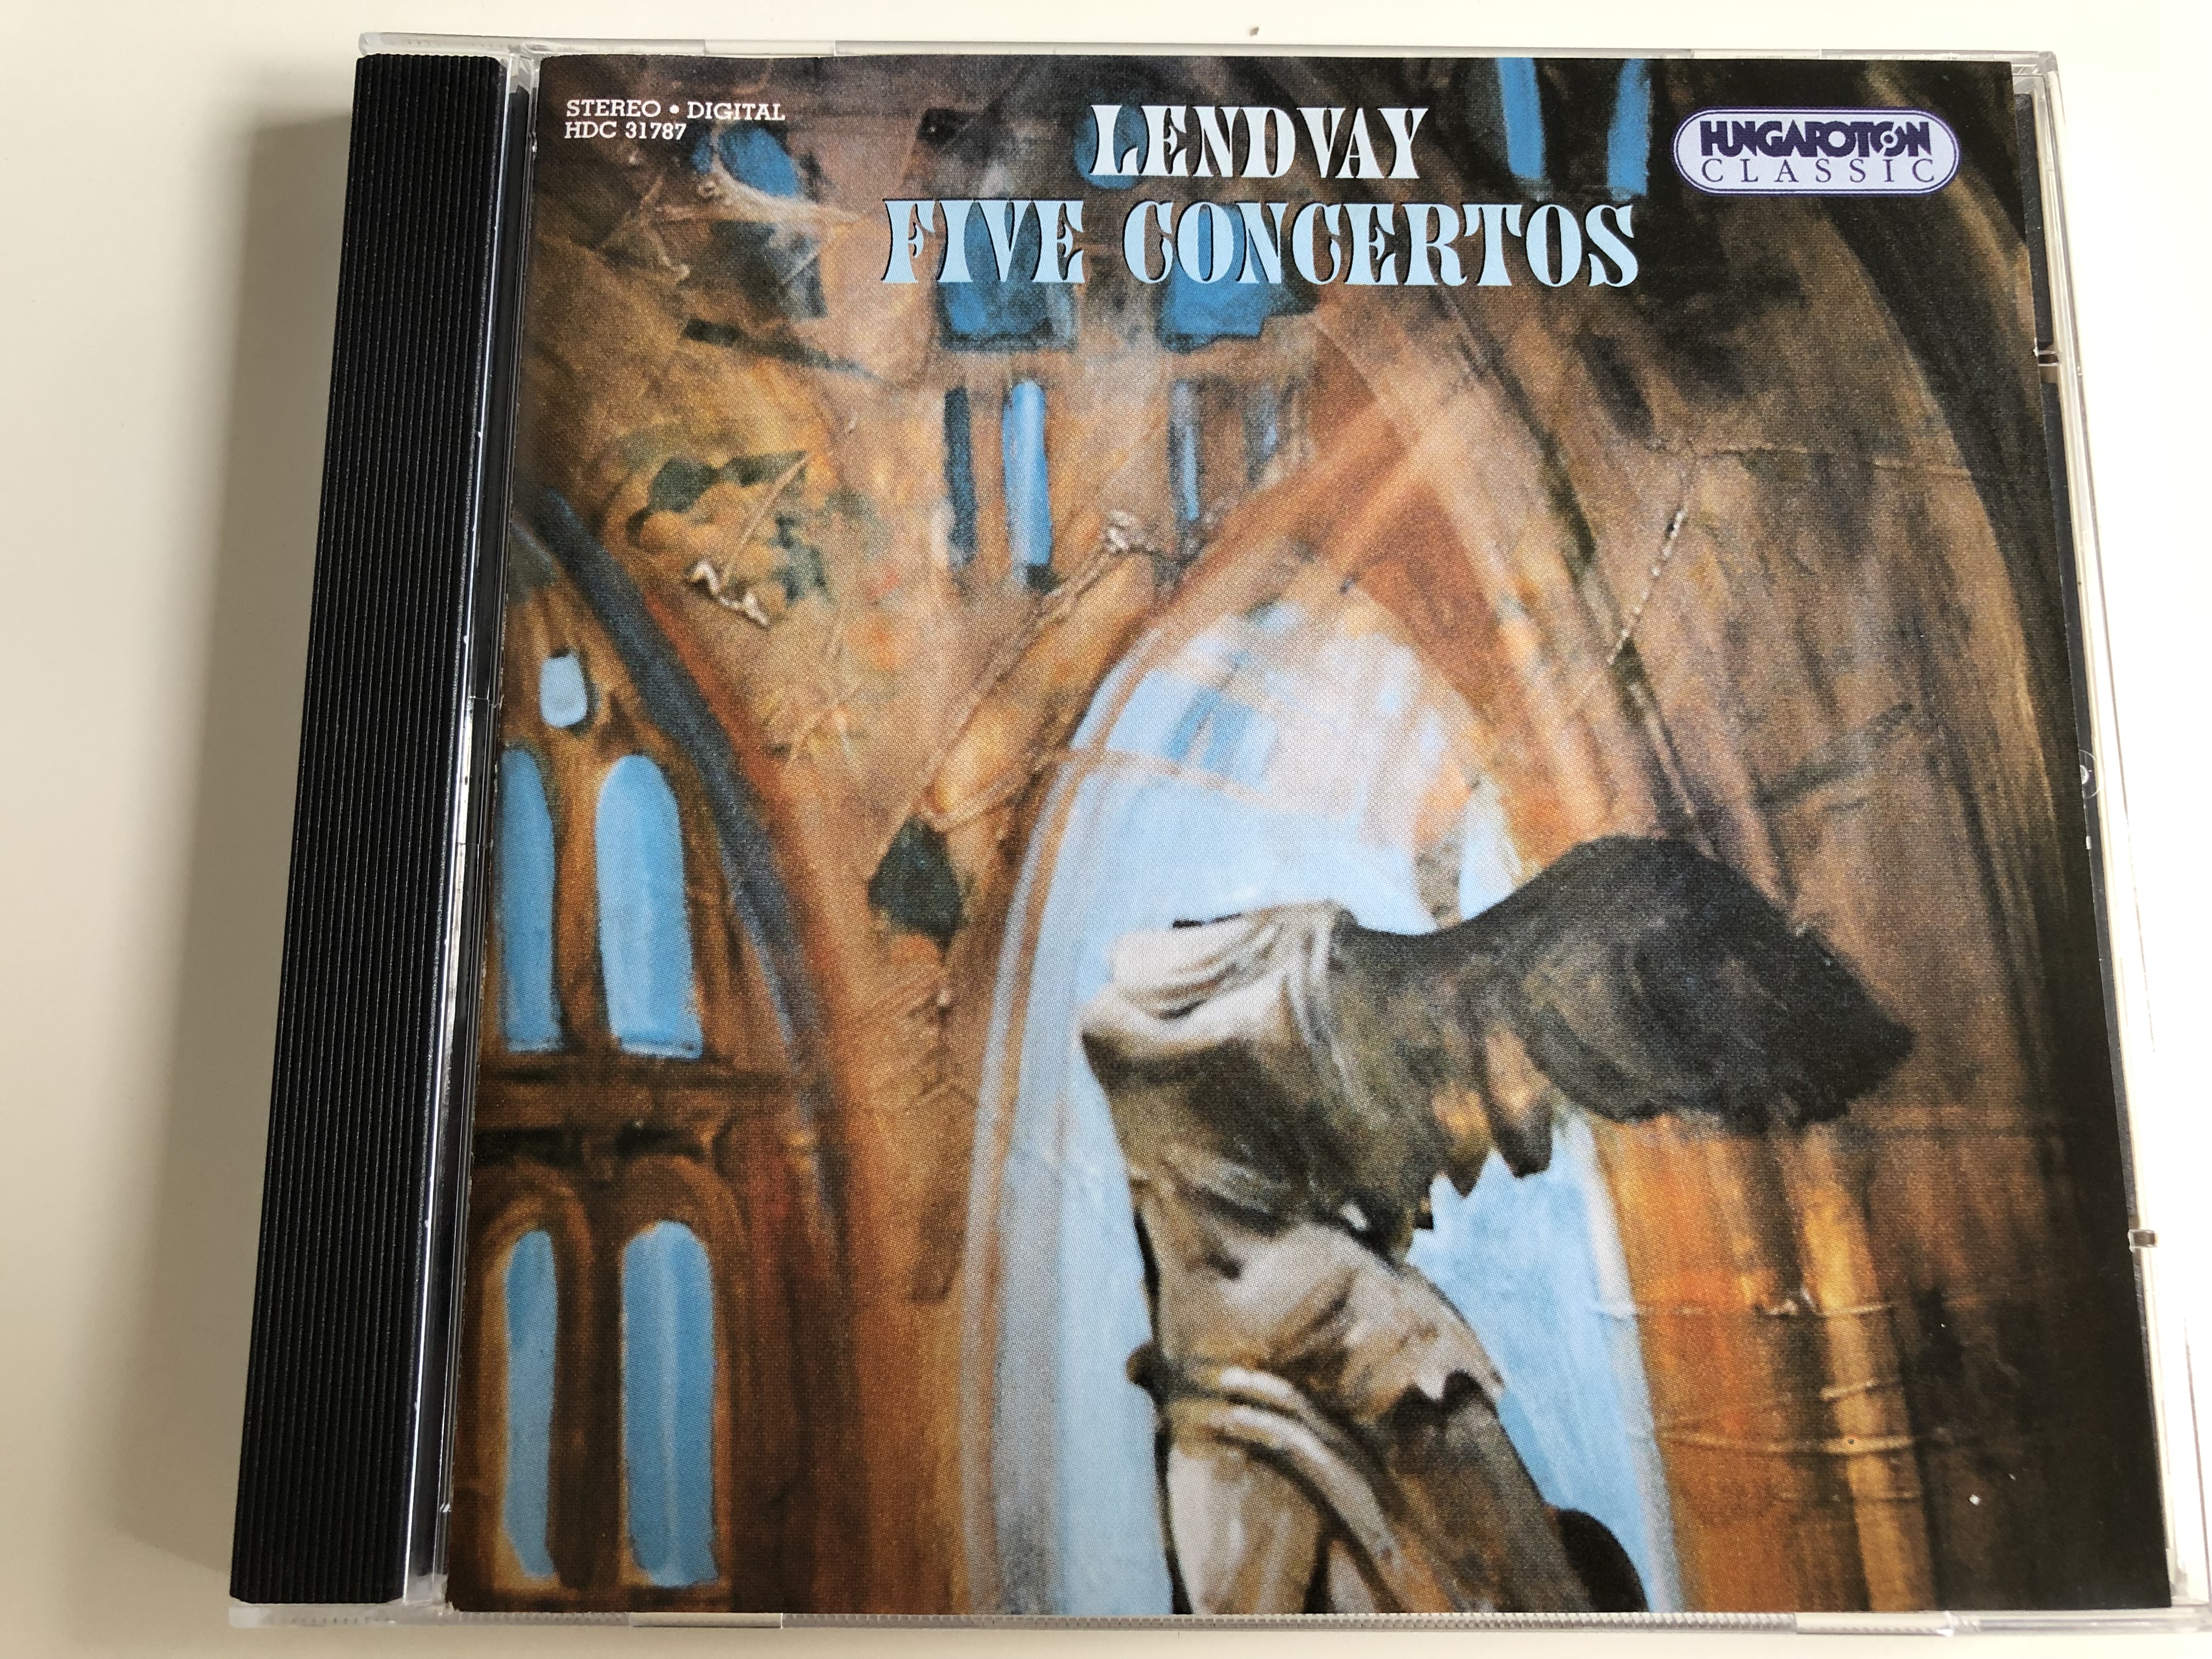 lendvay-five-concertos-l-szl-d-s-vilmos-szabadi-gy-rgy-geiger-csaba-onczay-gloria-lanni-hungaroton-classic-hcd-31787-audio-cd-1997-1-.jpg